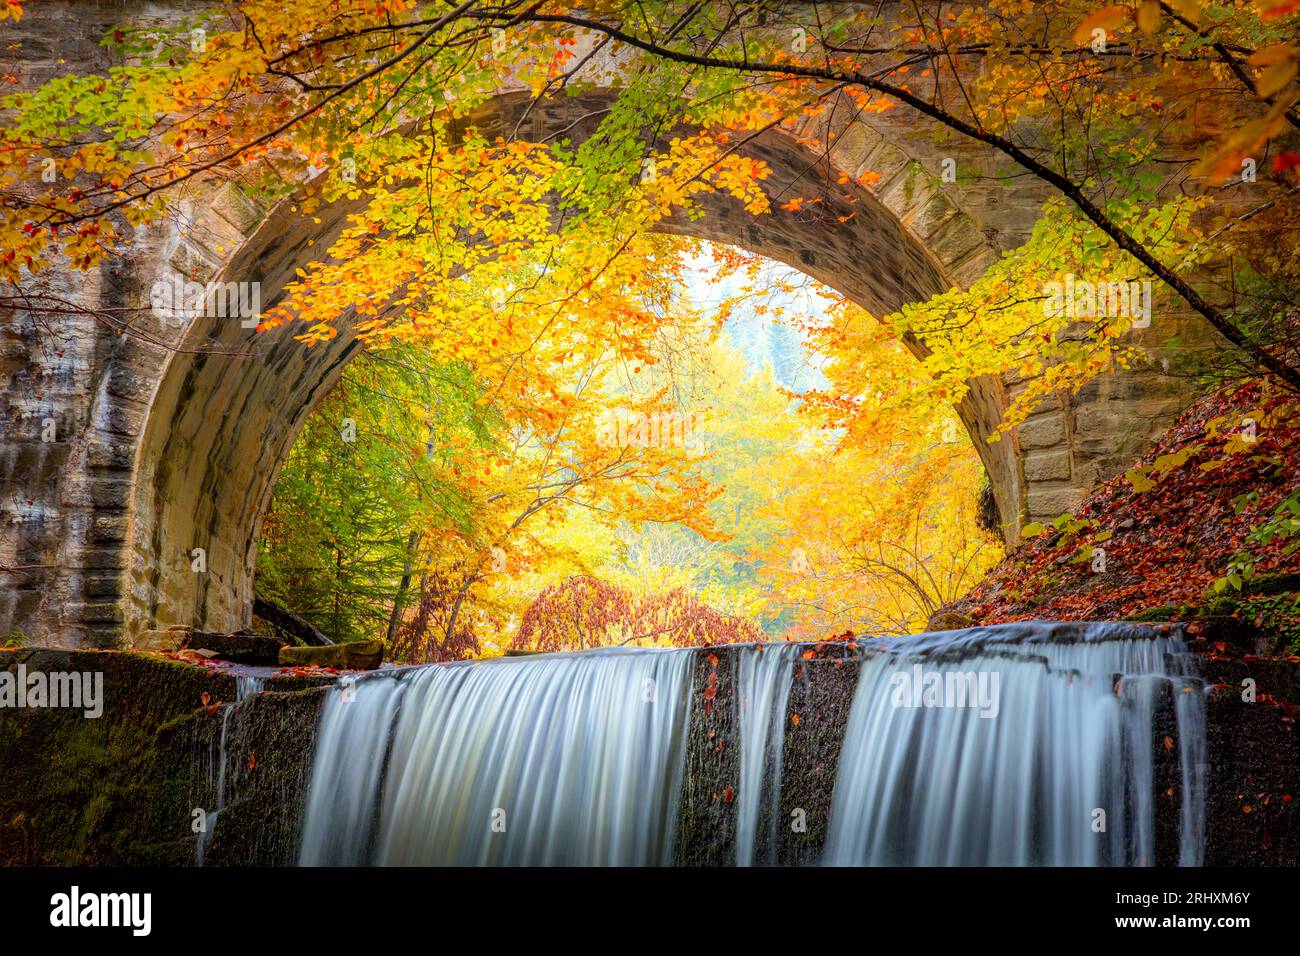 Fantastique paysage d'automne d'automne - cascade de rivière dans le parc forestier d'automne coloré avec des feuilles rouges jaunes avec vieux pont, fond de papier peint Banque D'Images